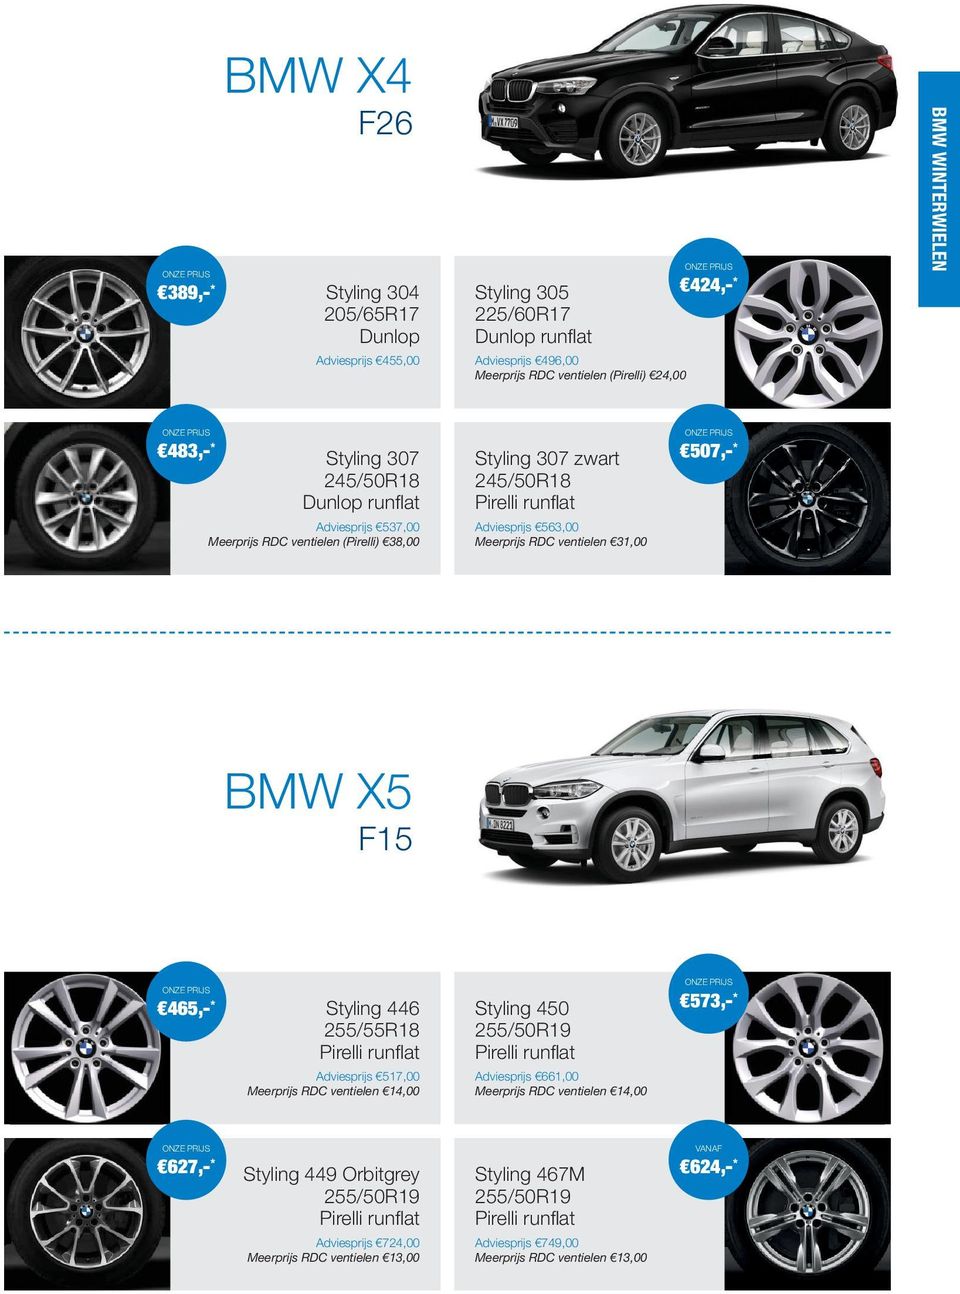 BMW X5 F15 465,- * Styling 446 255/55R18 Pirelli runflat Adviesprijs 517,00 Meerprijs RDC ventielen 14,00 Styling 450 255/50R19 Pirelli runflat Adviesprijs 661,00 Meerprijs RDC ventielen 14,00 573,-